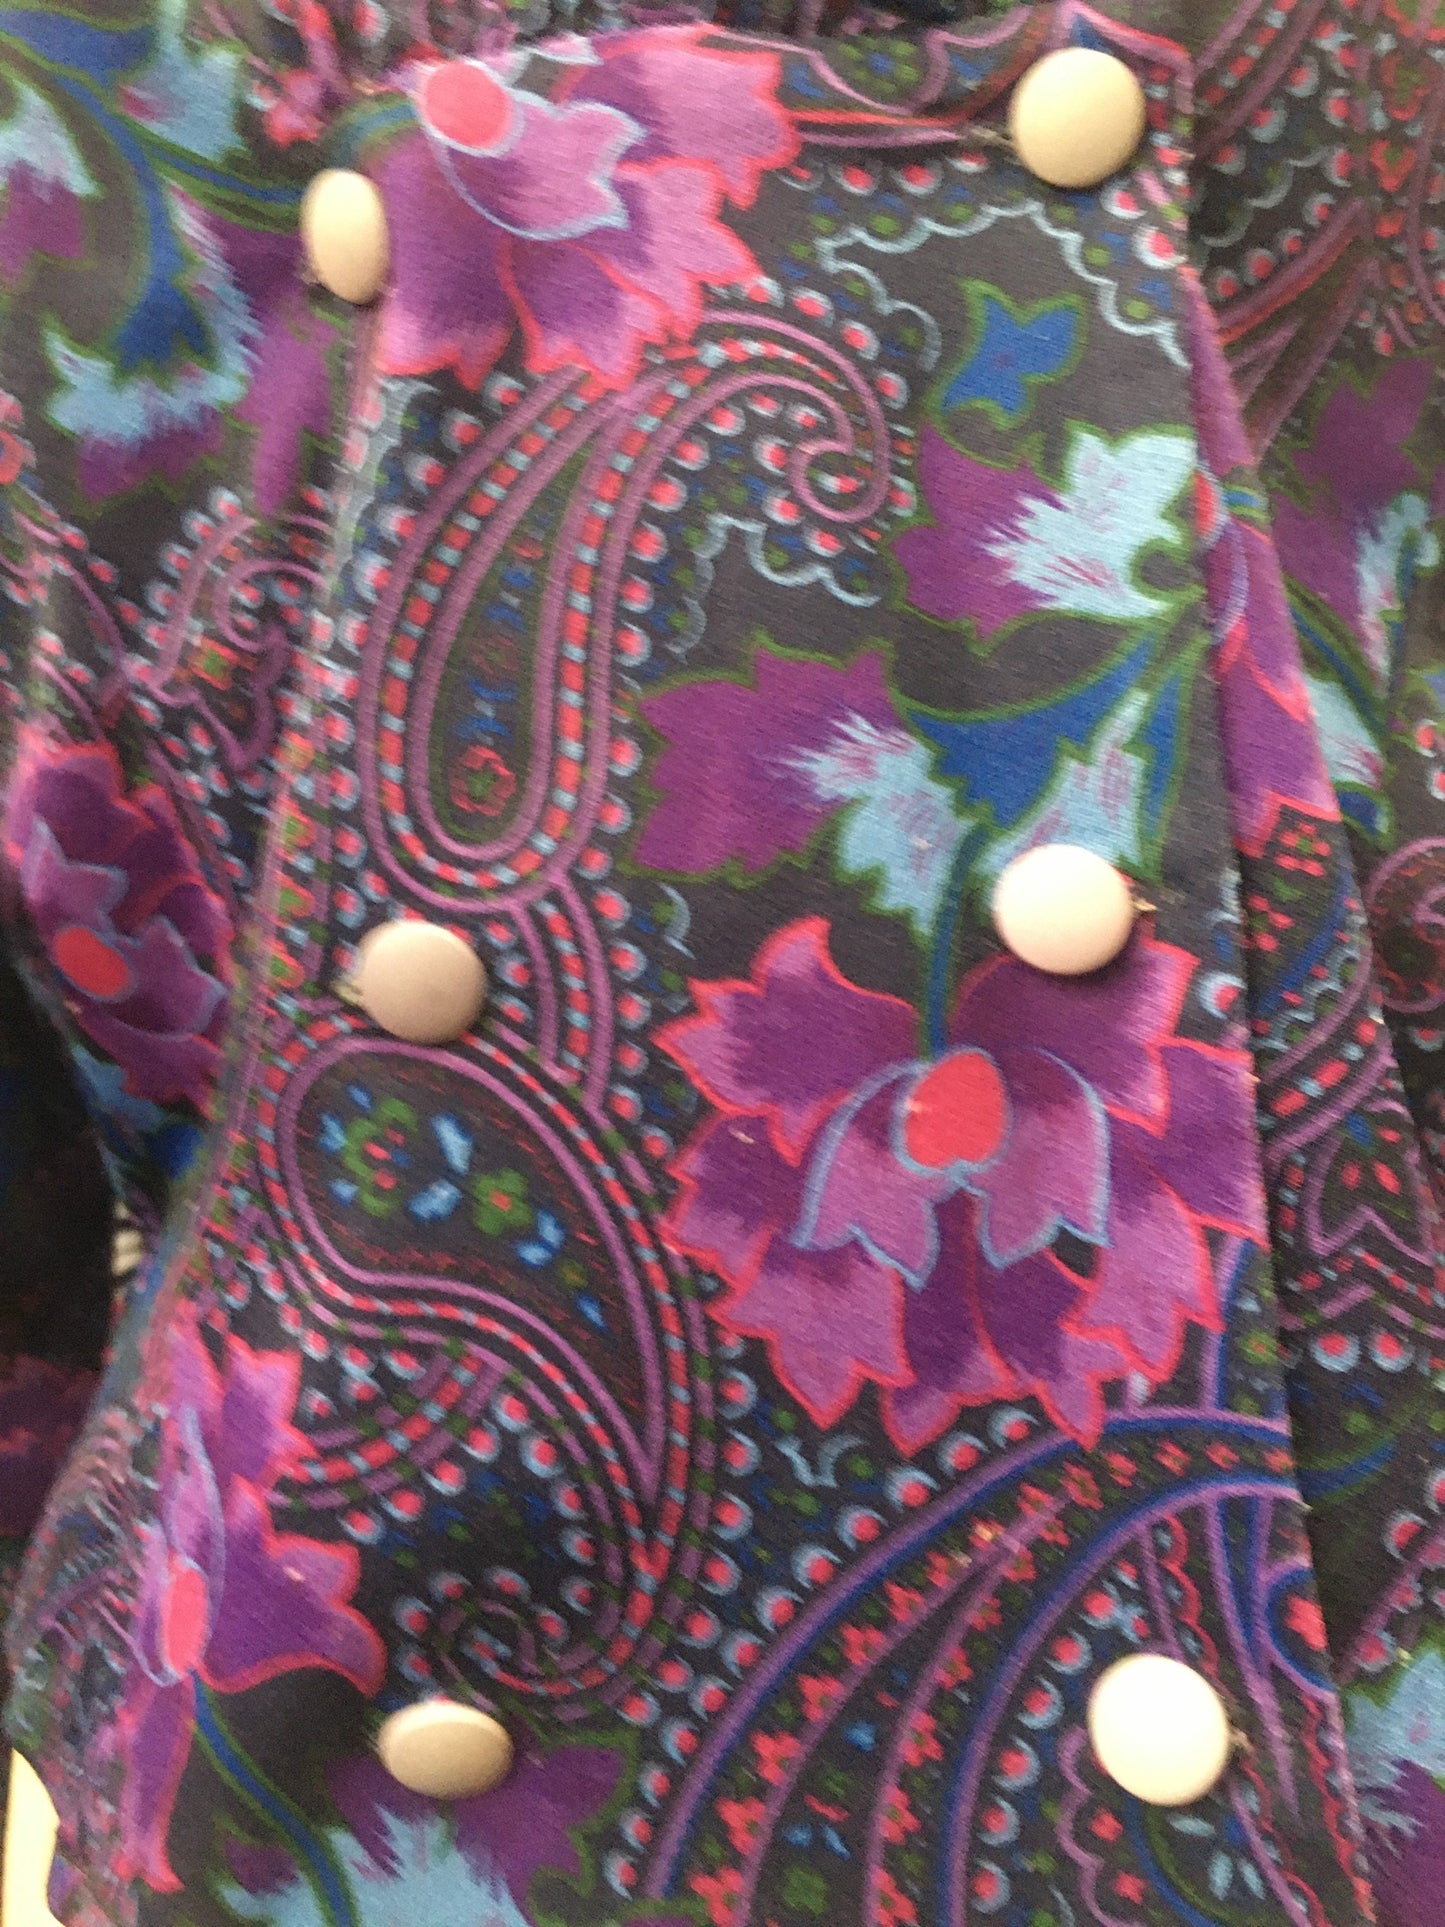 1970’s Vintage Paisley blouse